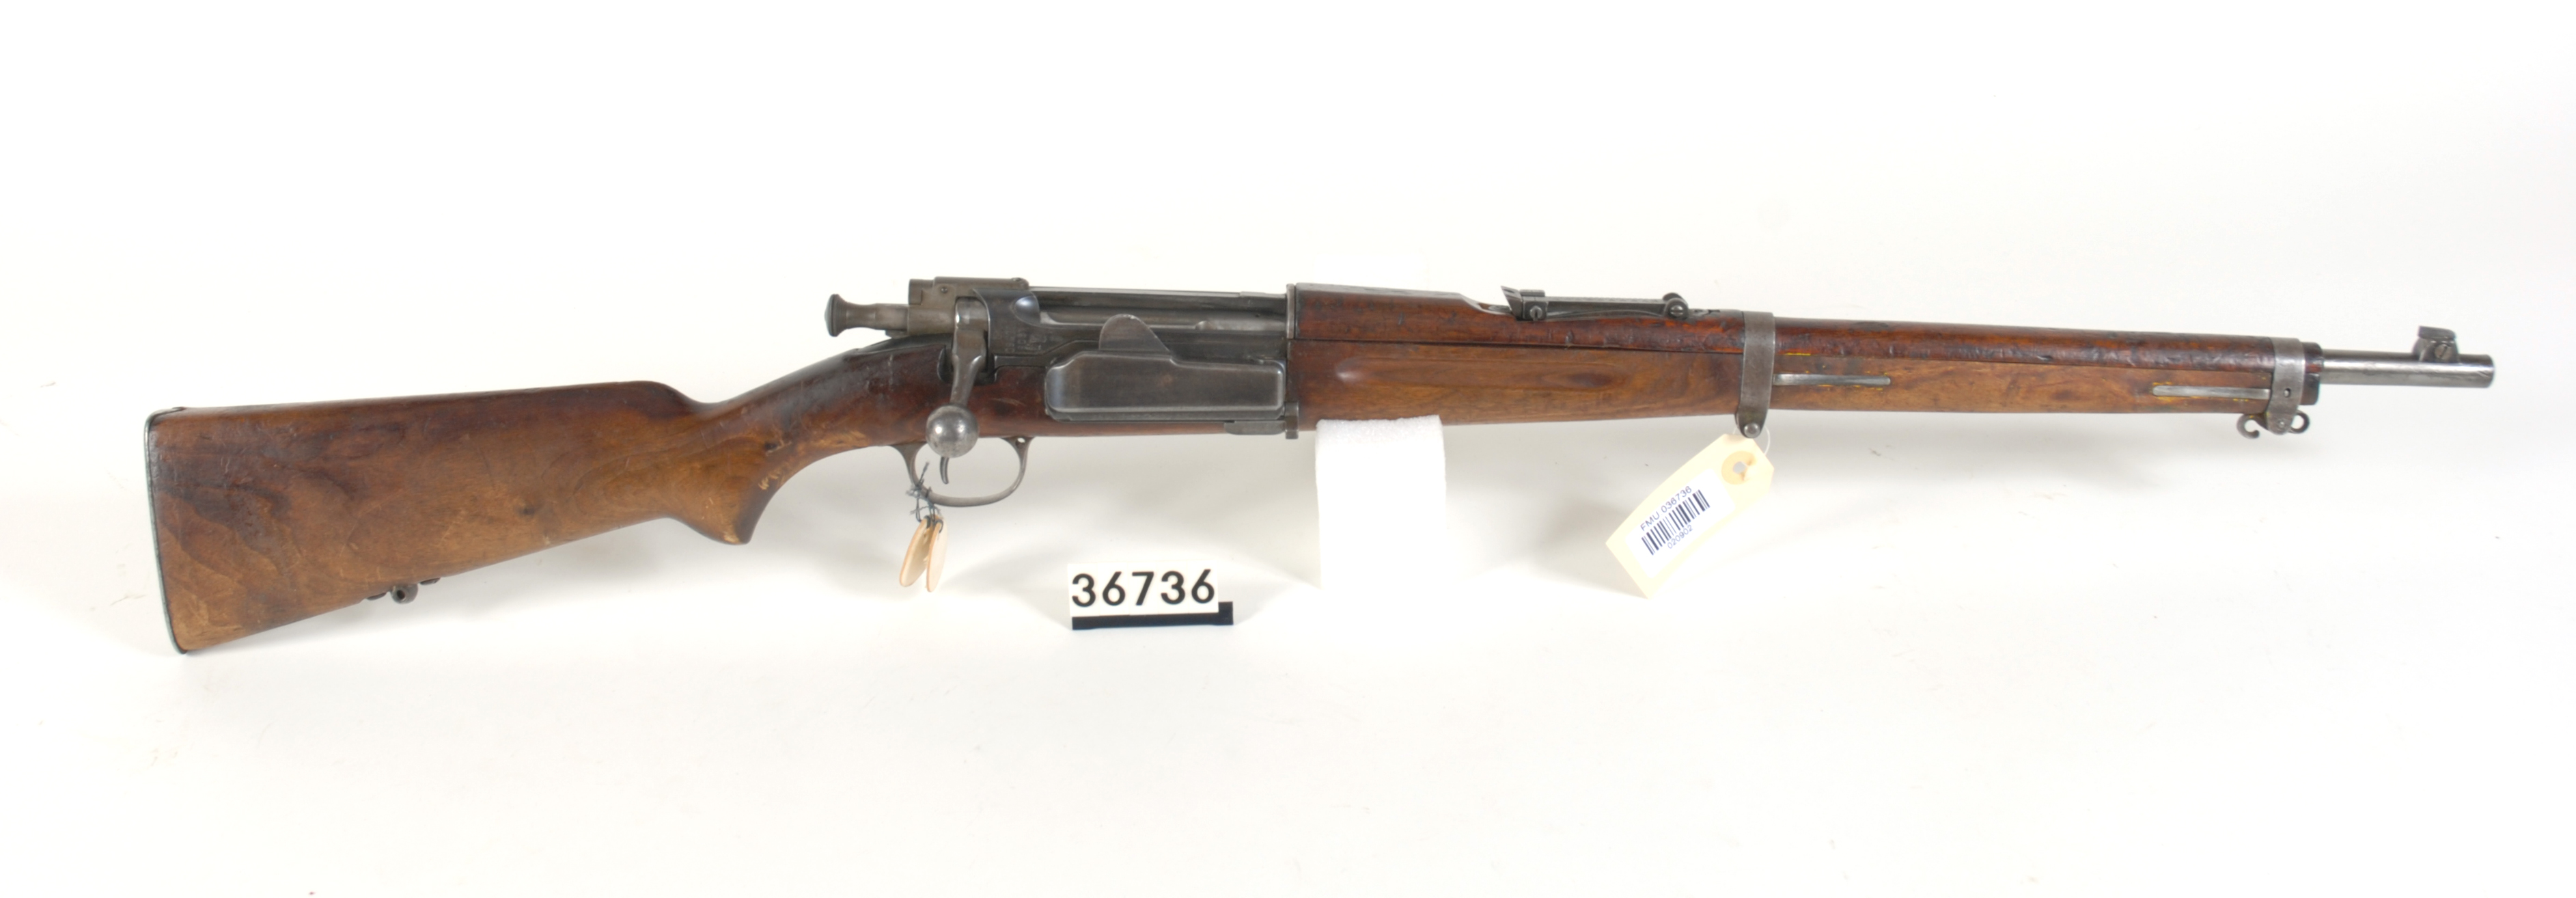 ./guns/rifle/bilder/Rifle-Kongsberg-Krag-M1904-FMU.036736.jpg